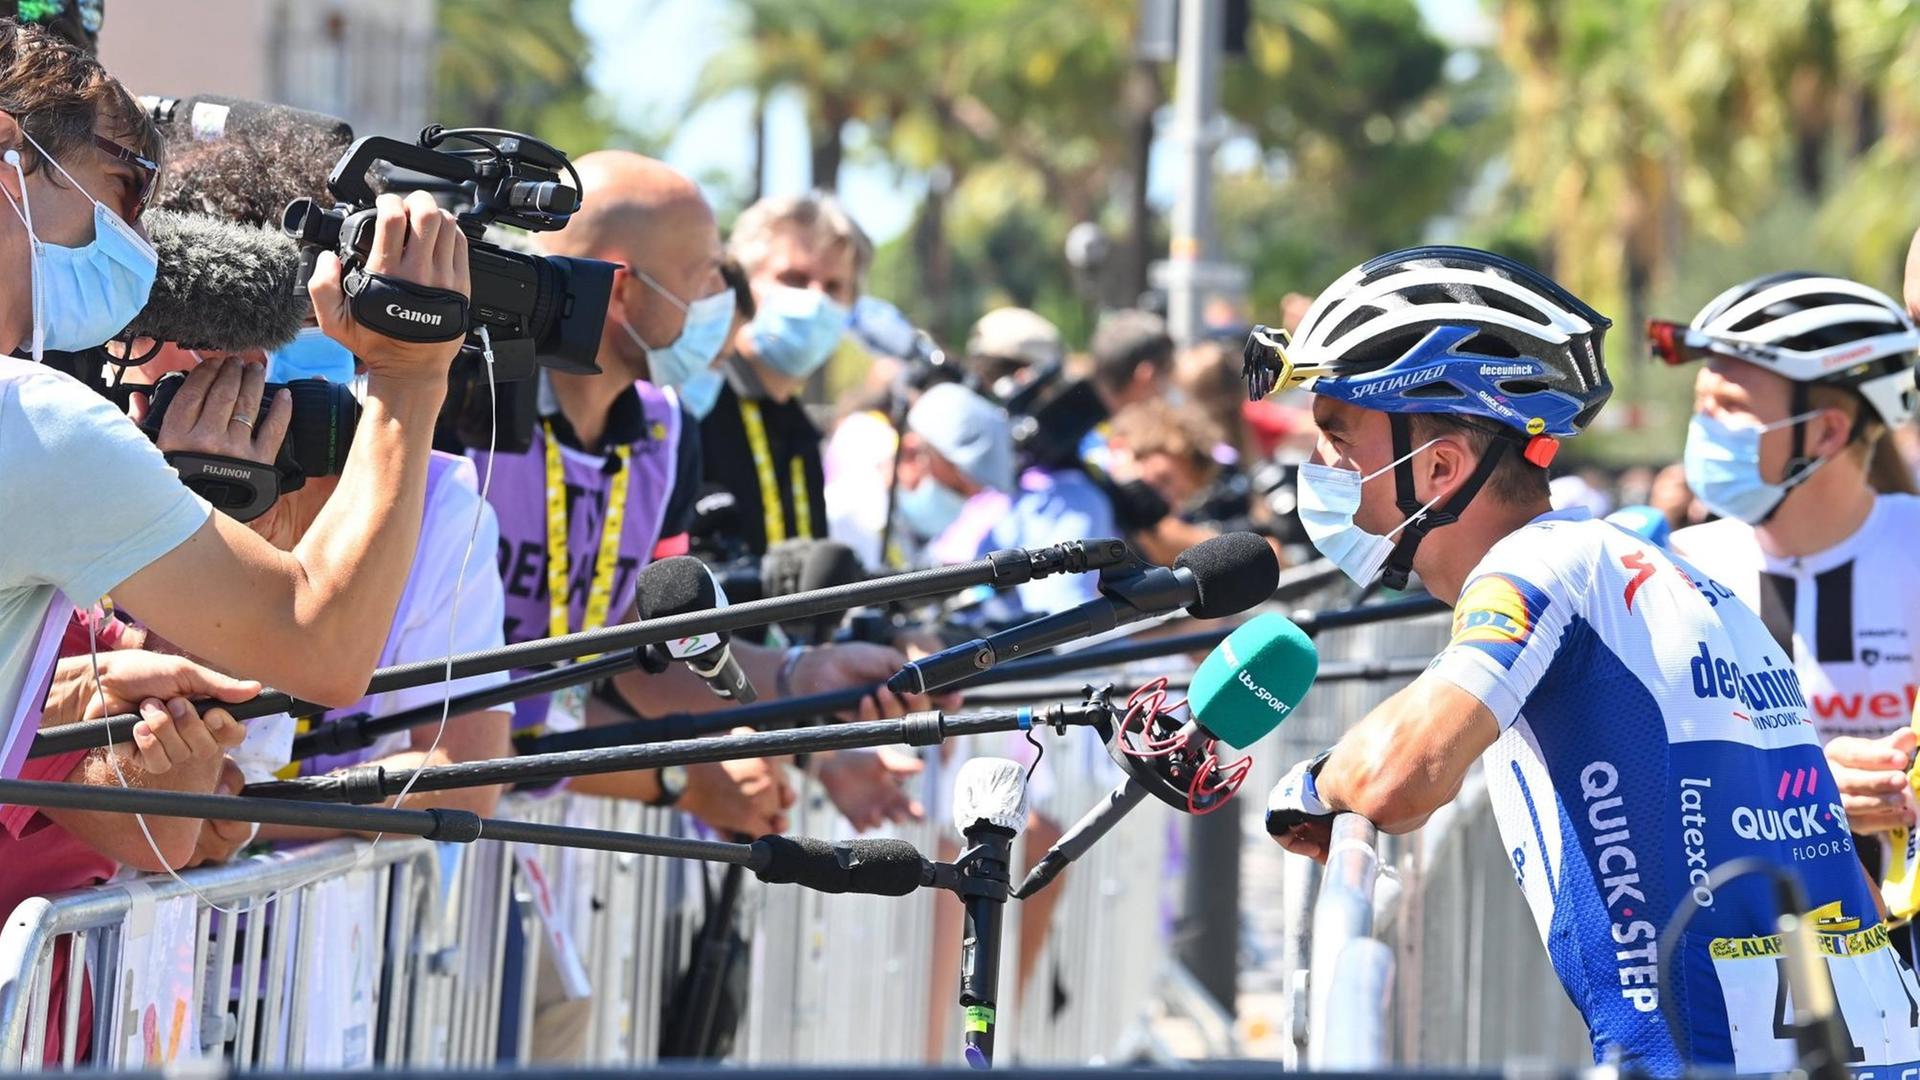 Julian Alaphilippe, französischer Radprofi vom Team DECEUNINCK-QUICK-STEP, bei der 2. Etappe der Tour de France 2020 am 30. August 2020 in Nizza vor den Kameras und Mikrofonen.